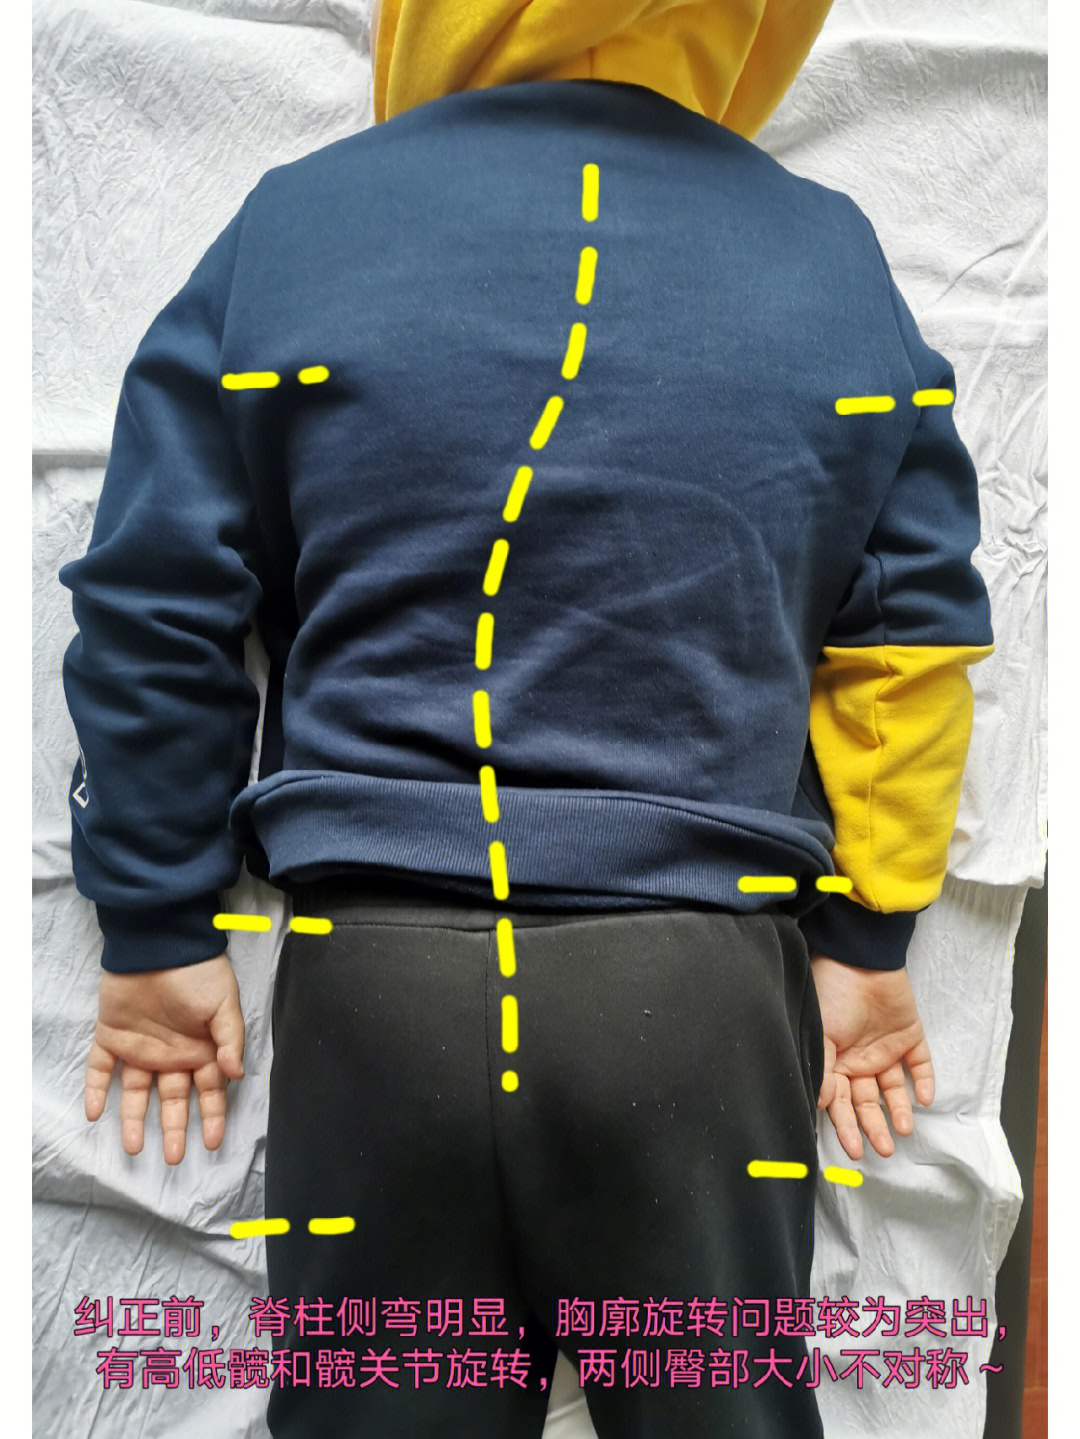 脊柱侧弯较为明显胸廓旋转问题尤为突出～高低髋和髋关节旋转明显